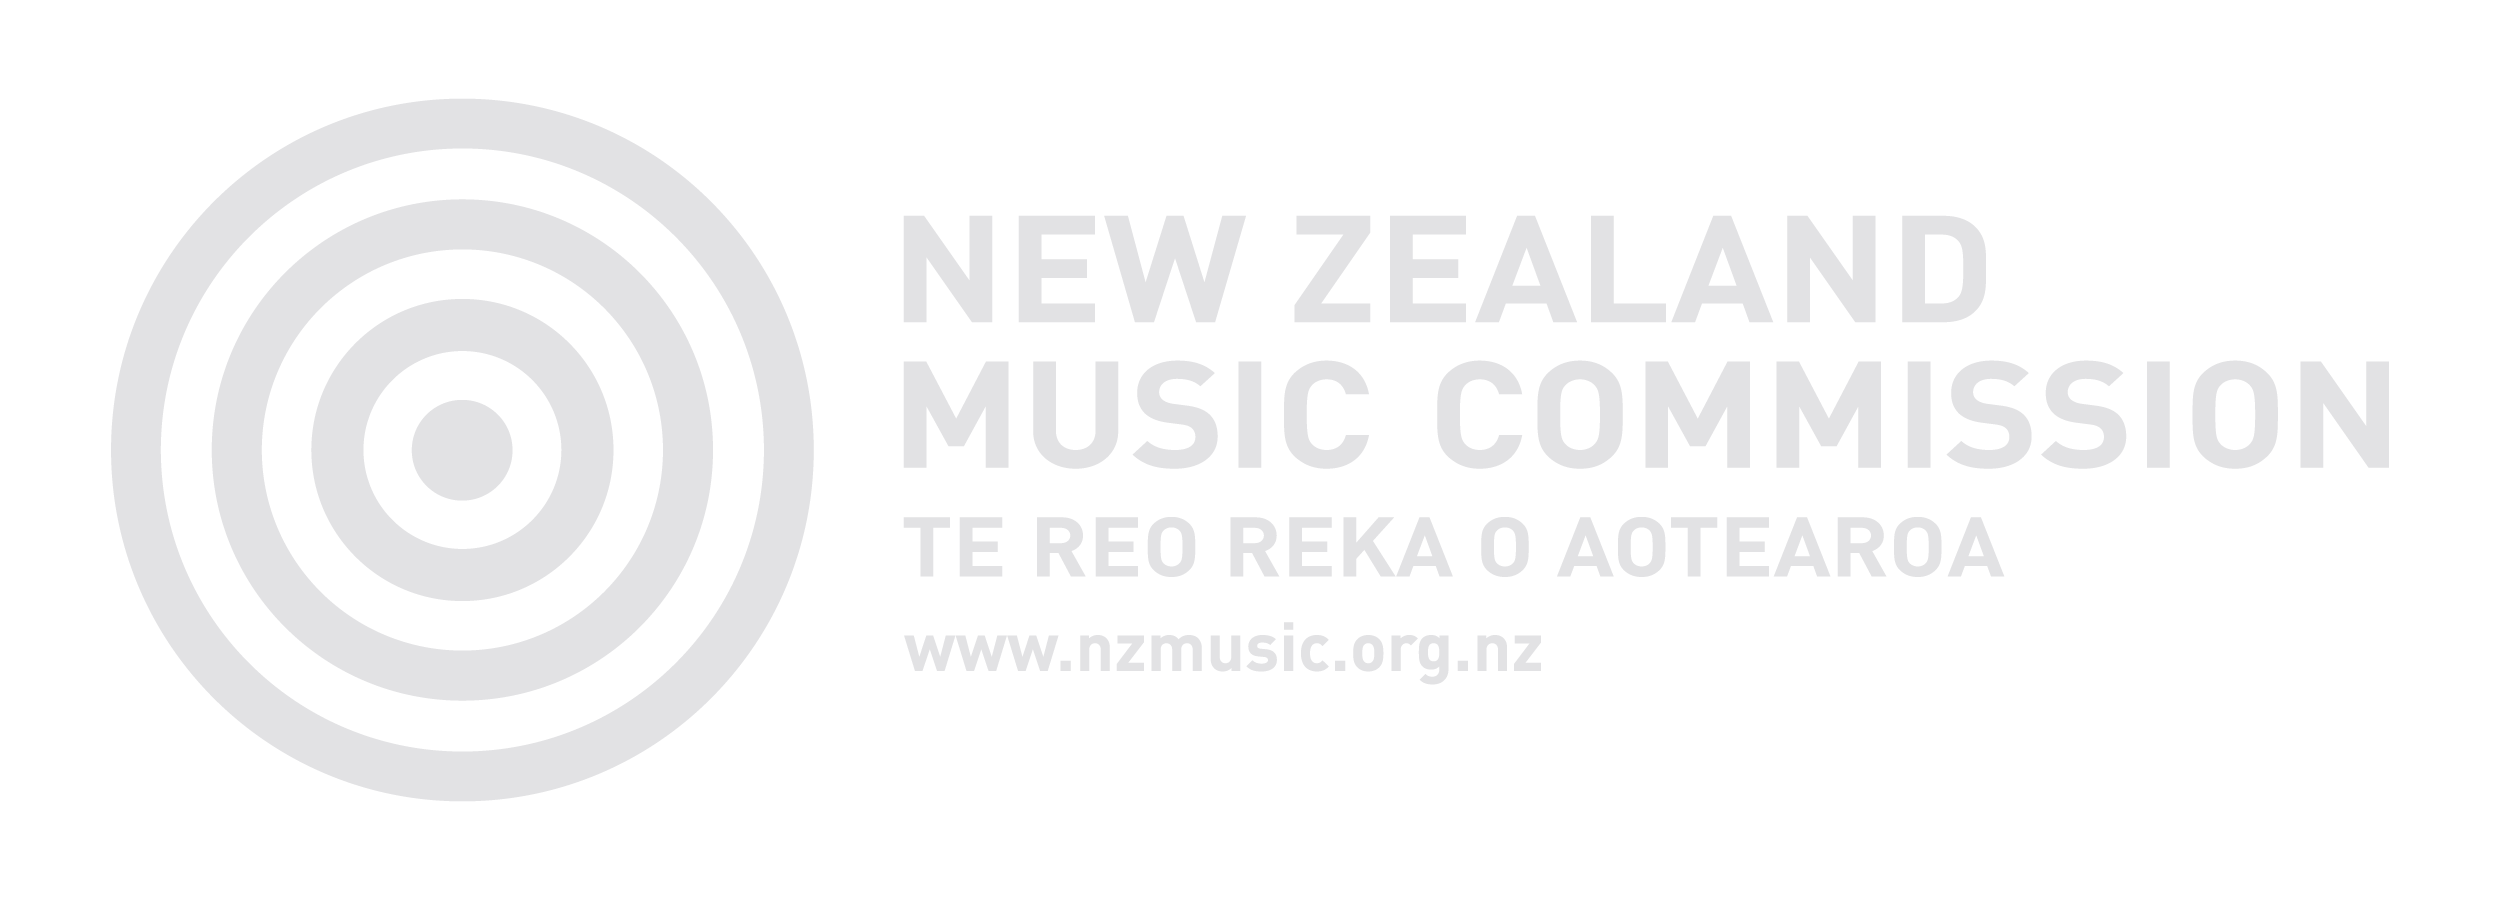 New Zealand Music Commission Logo